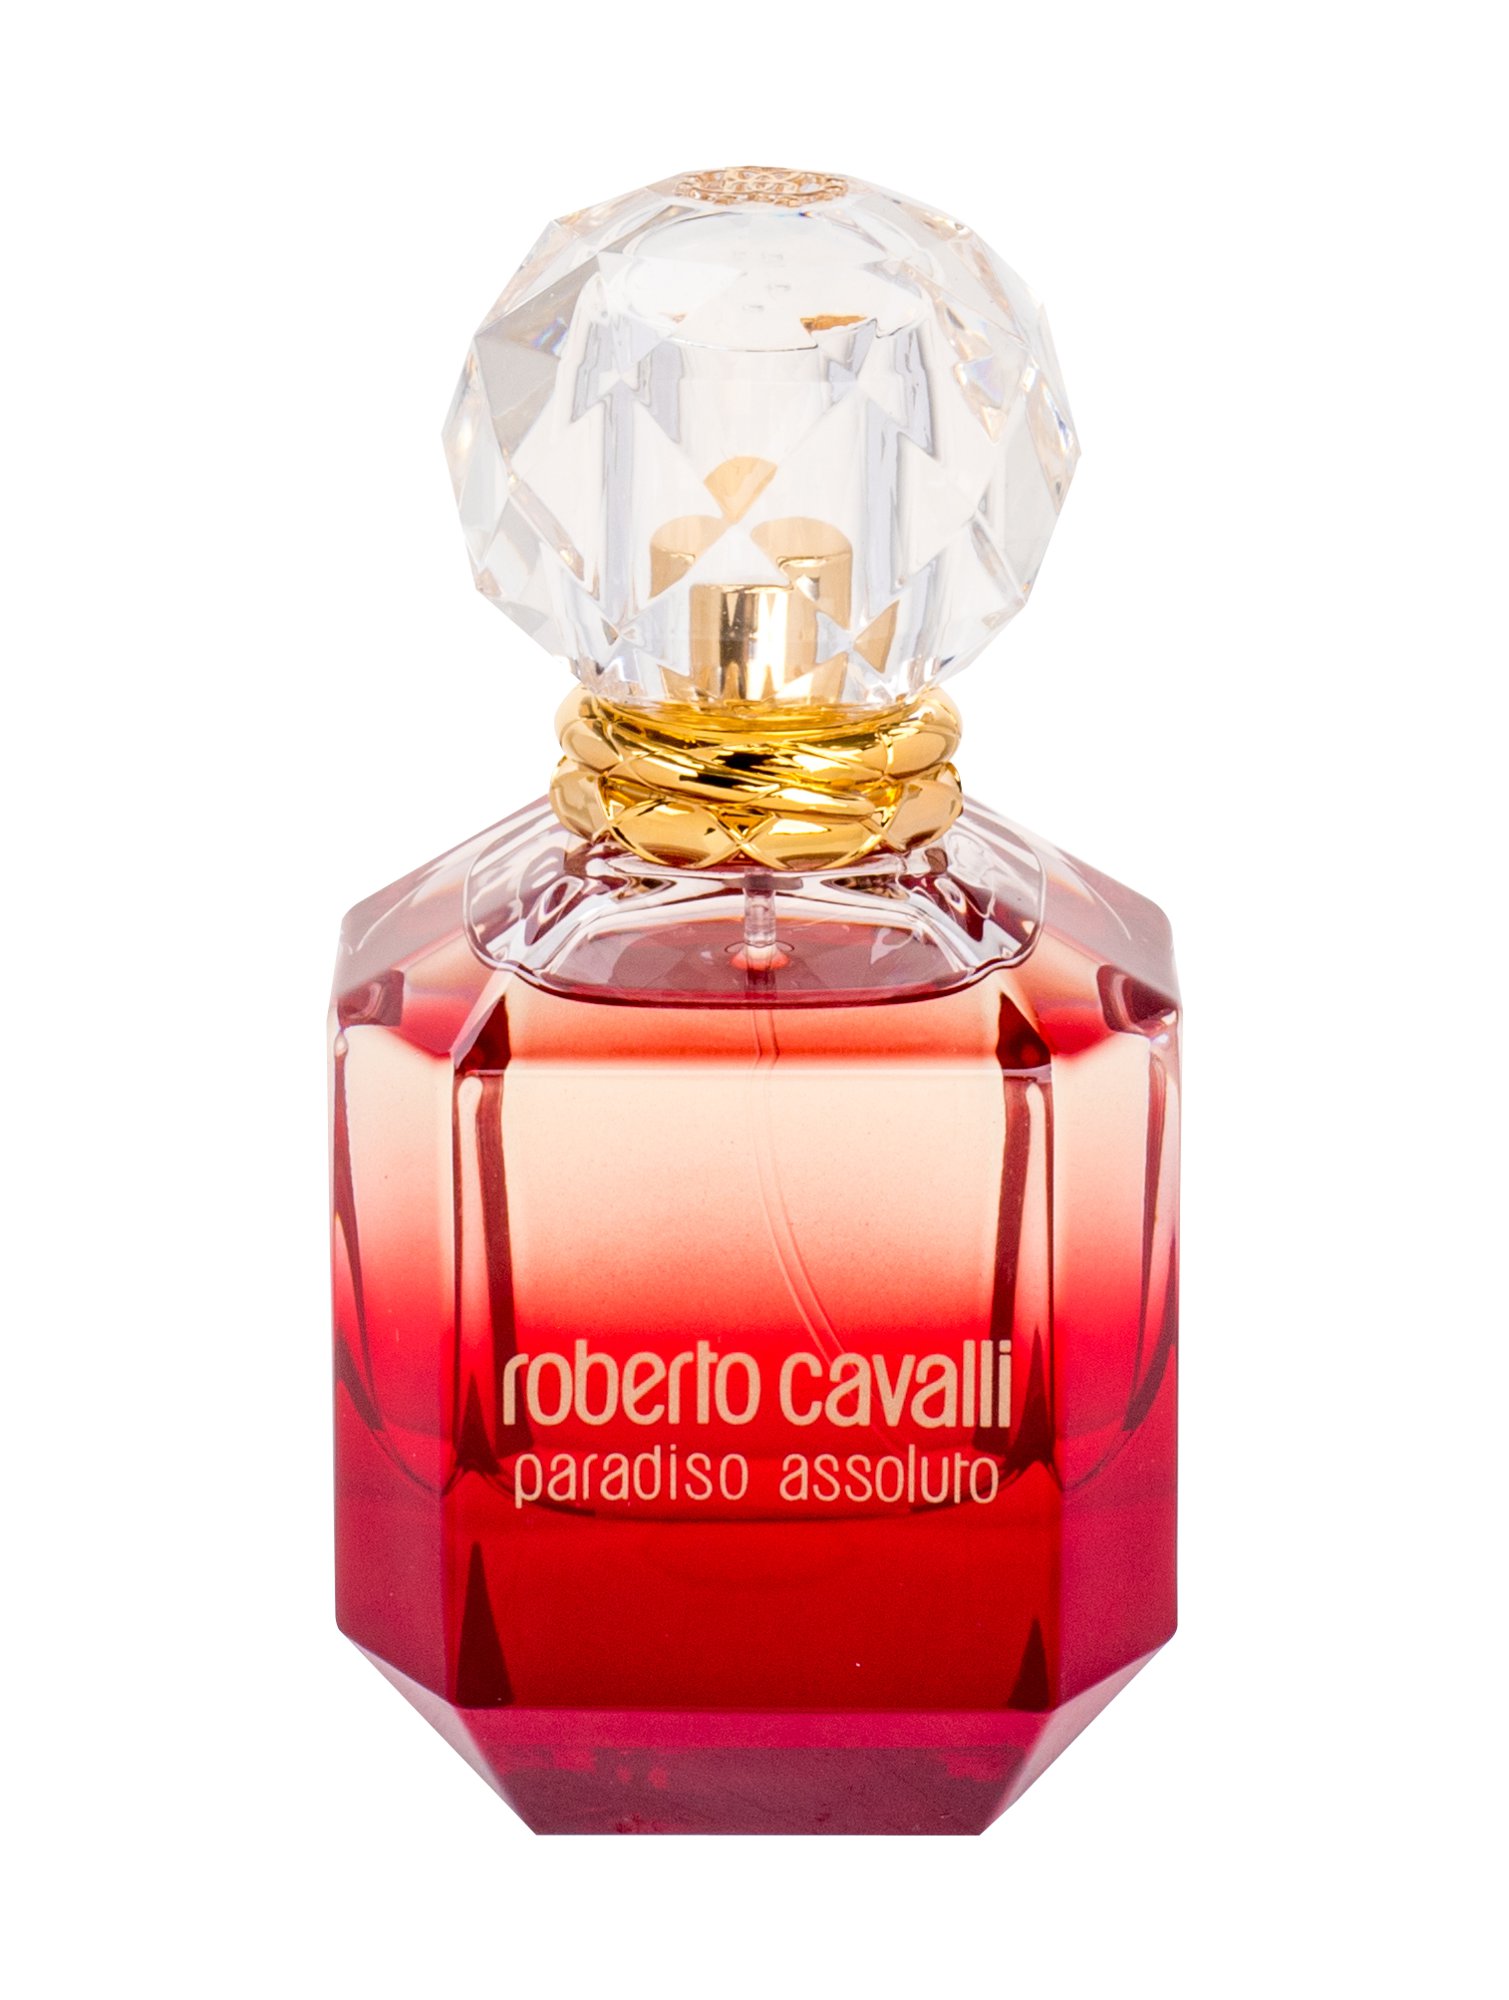 Roberto Cavalli Paradiso Assoluto, Parfumovaná voda 75ml - Tester